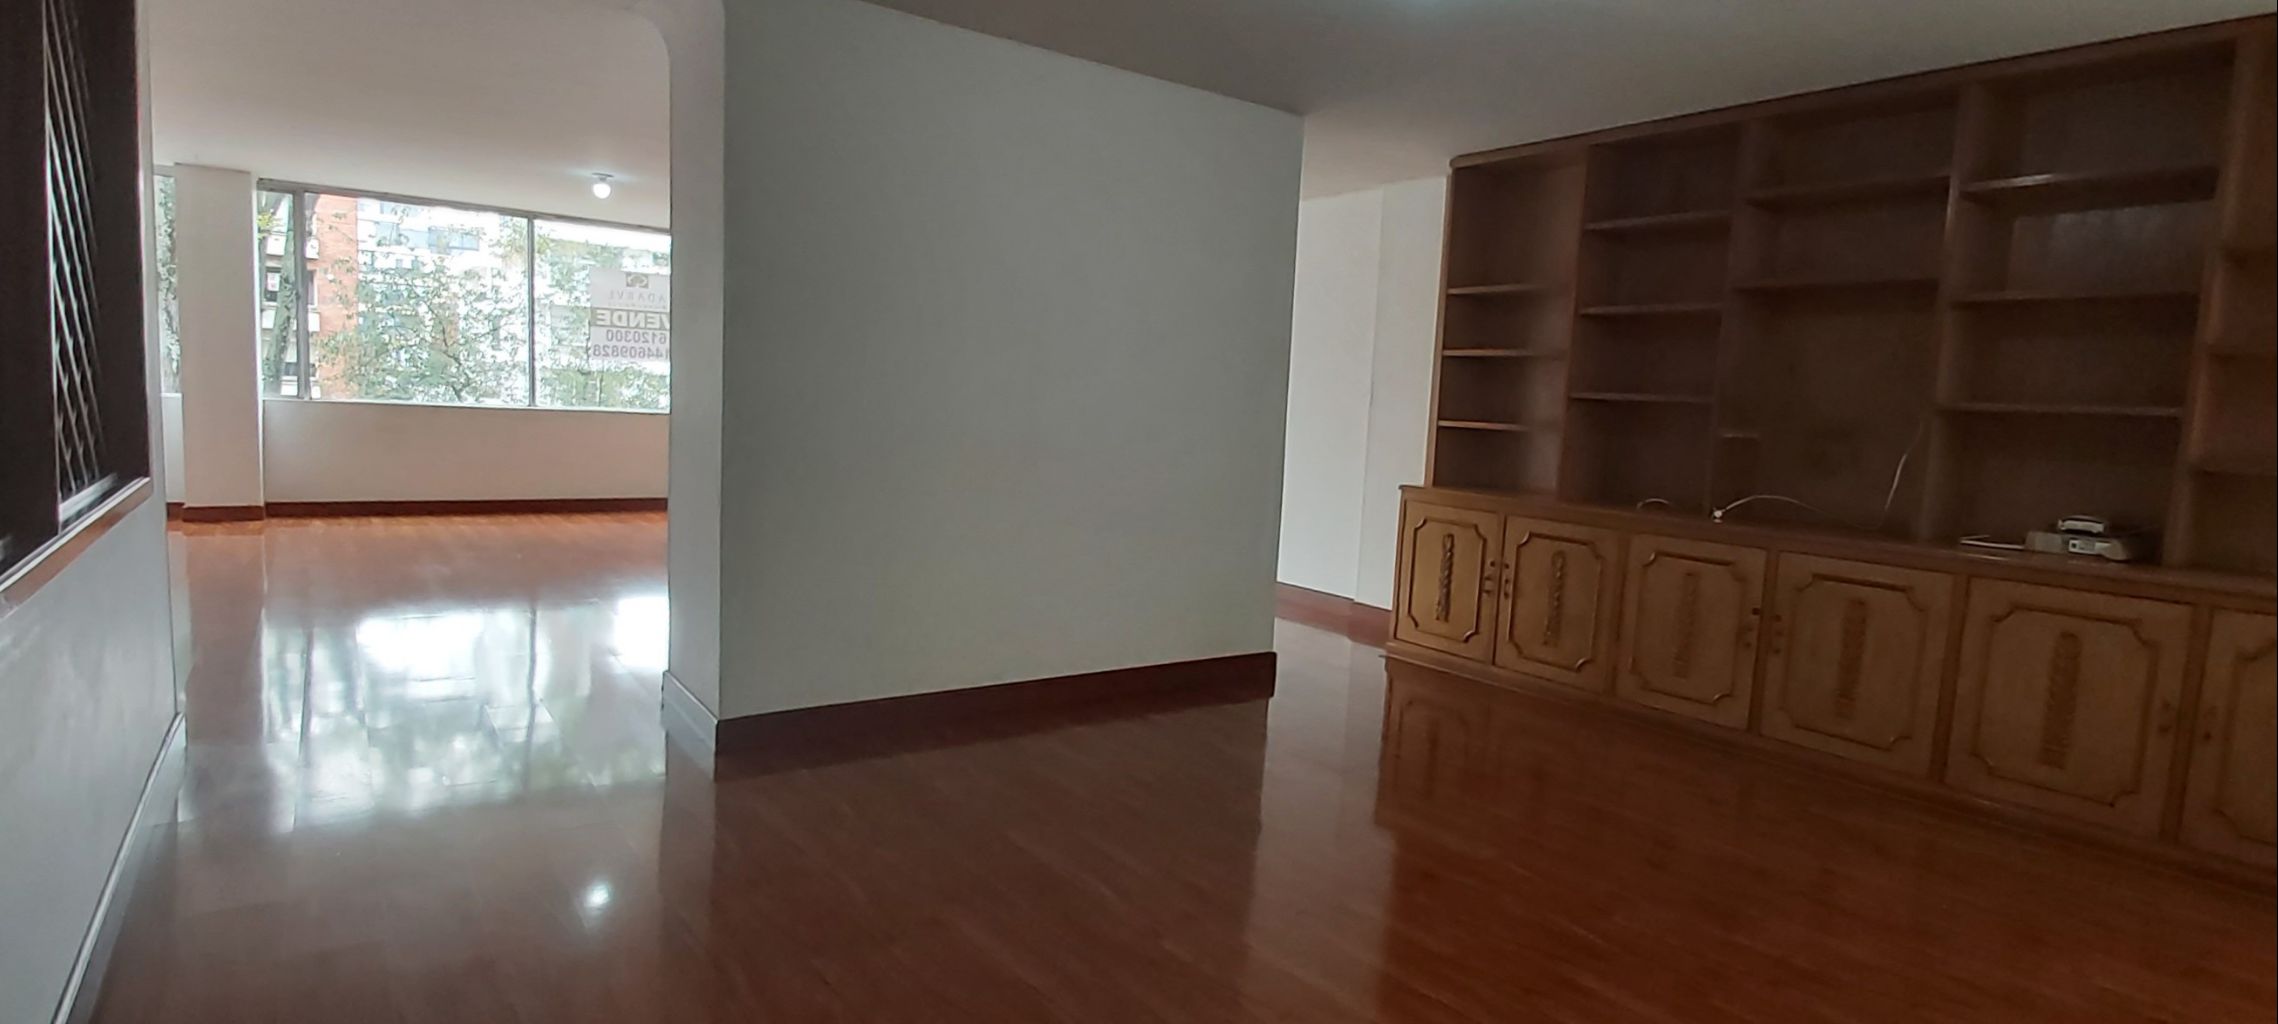 verinmuebles 670 628 Apartamento para remodelar en Chicó